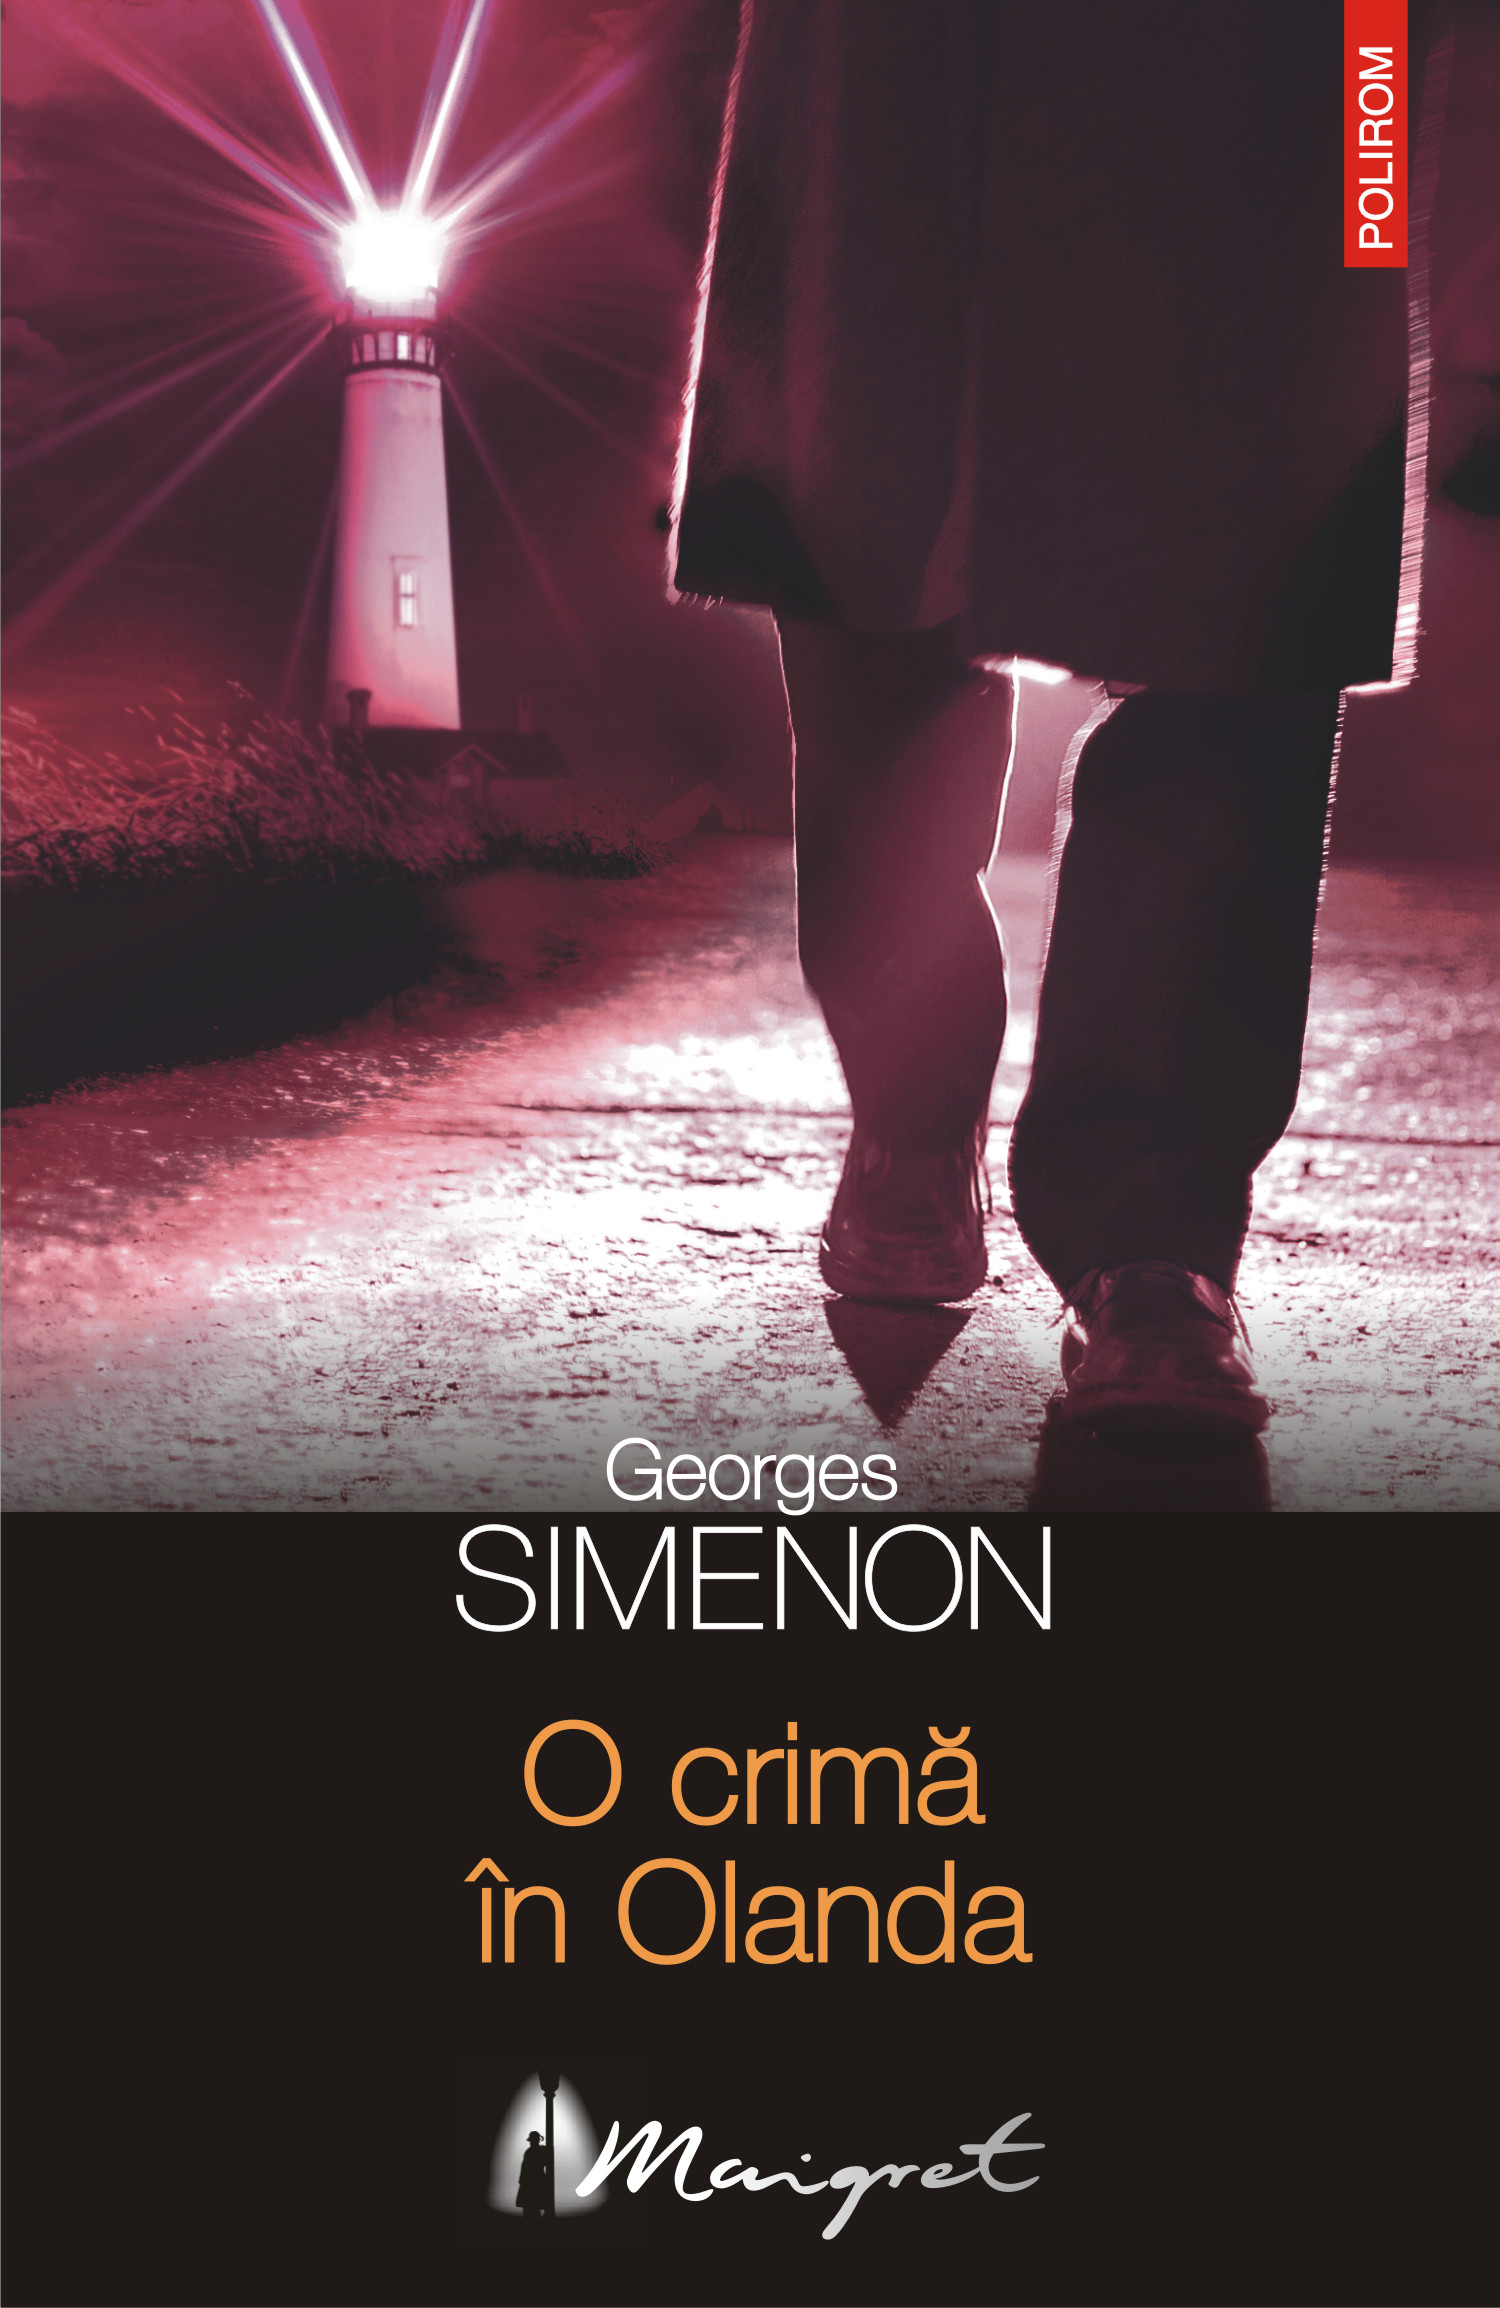 eBook O crima in Olanda - Georges Simenon